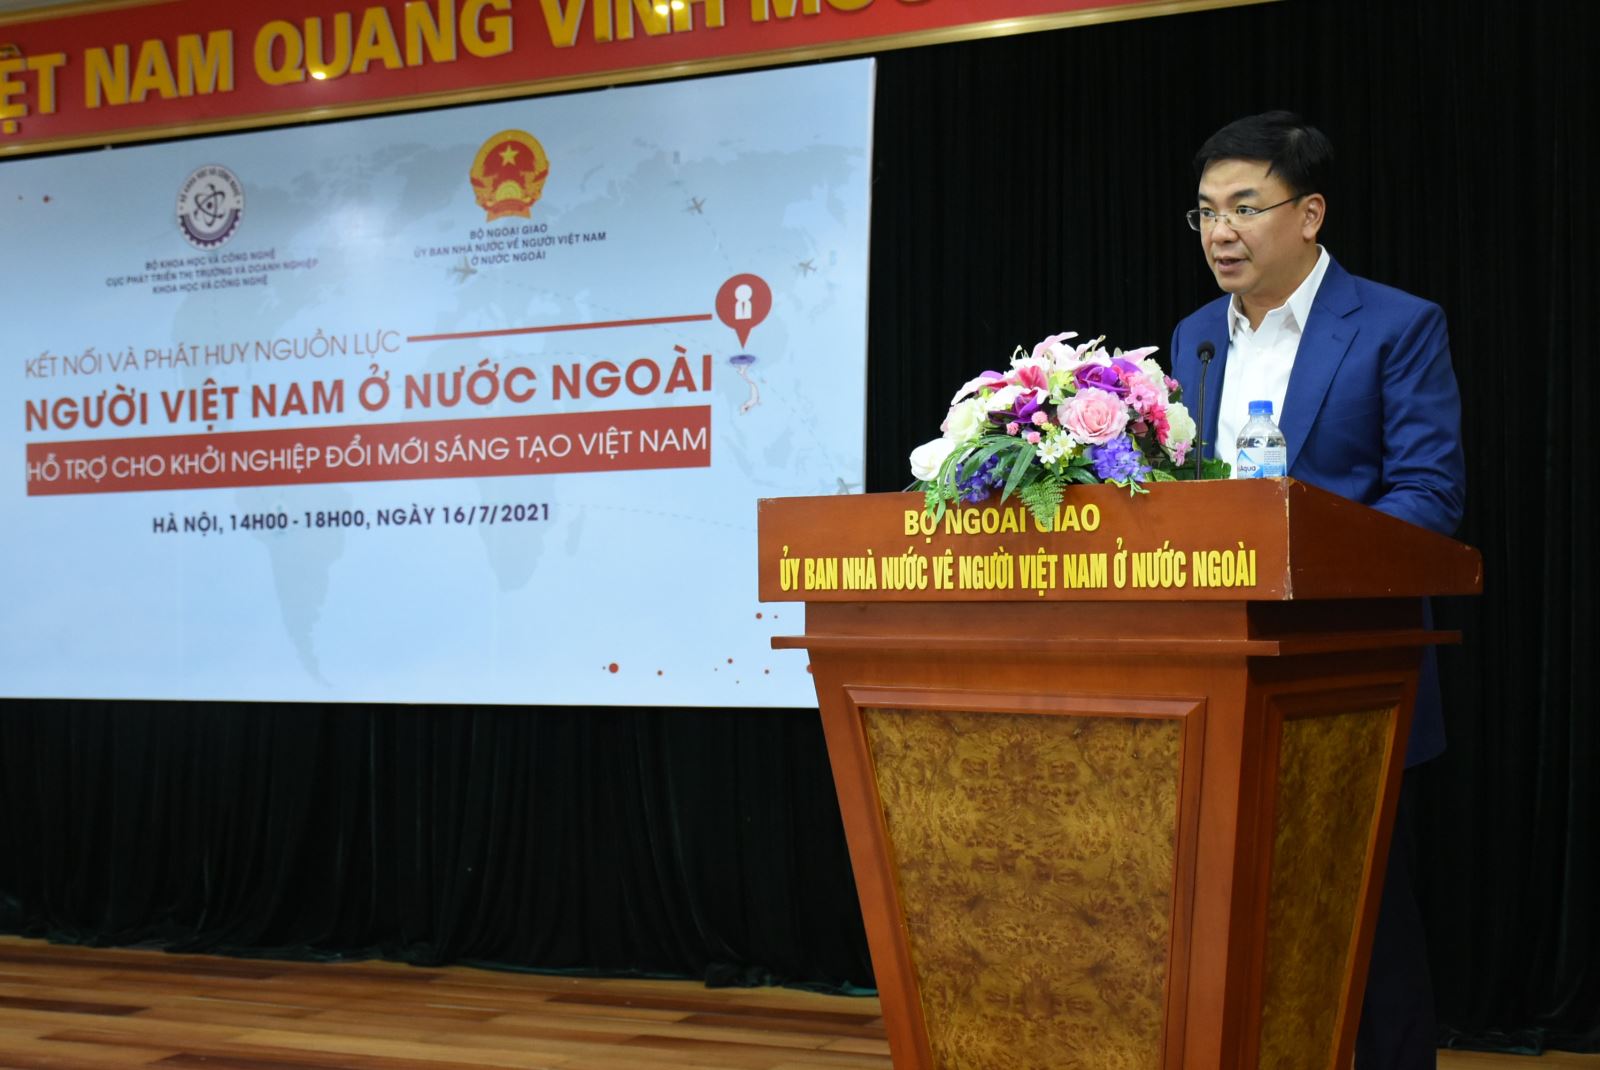 Kết nối và phát huy nguồn lực của người Việt Nam ở nước ngoài hỗ trợ cho khởi nghiệp đổi mới sáng tạo